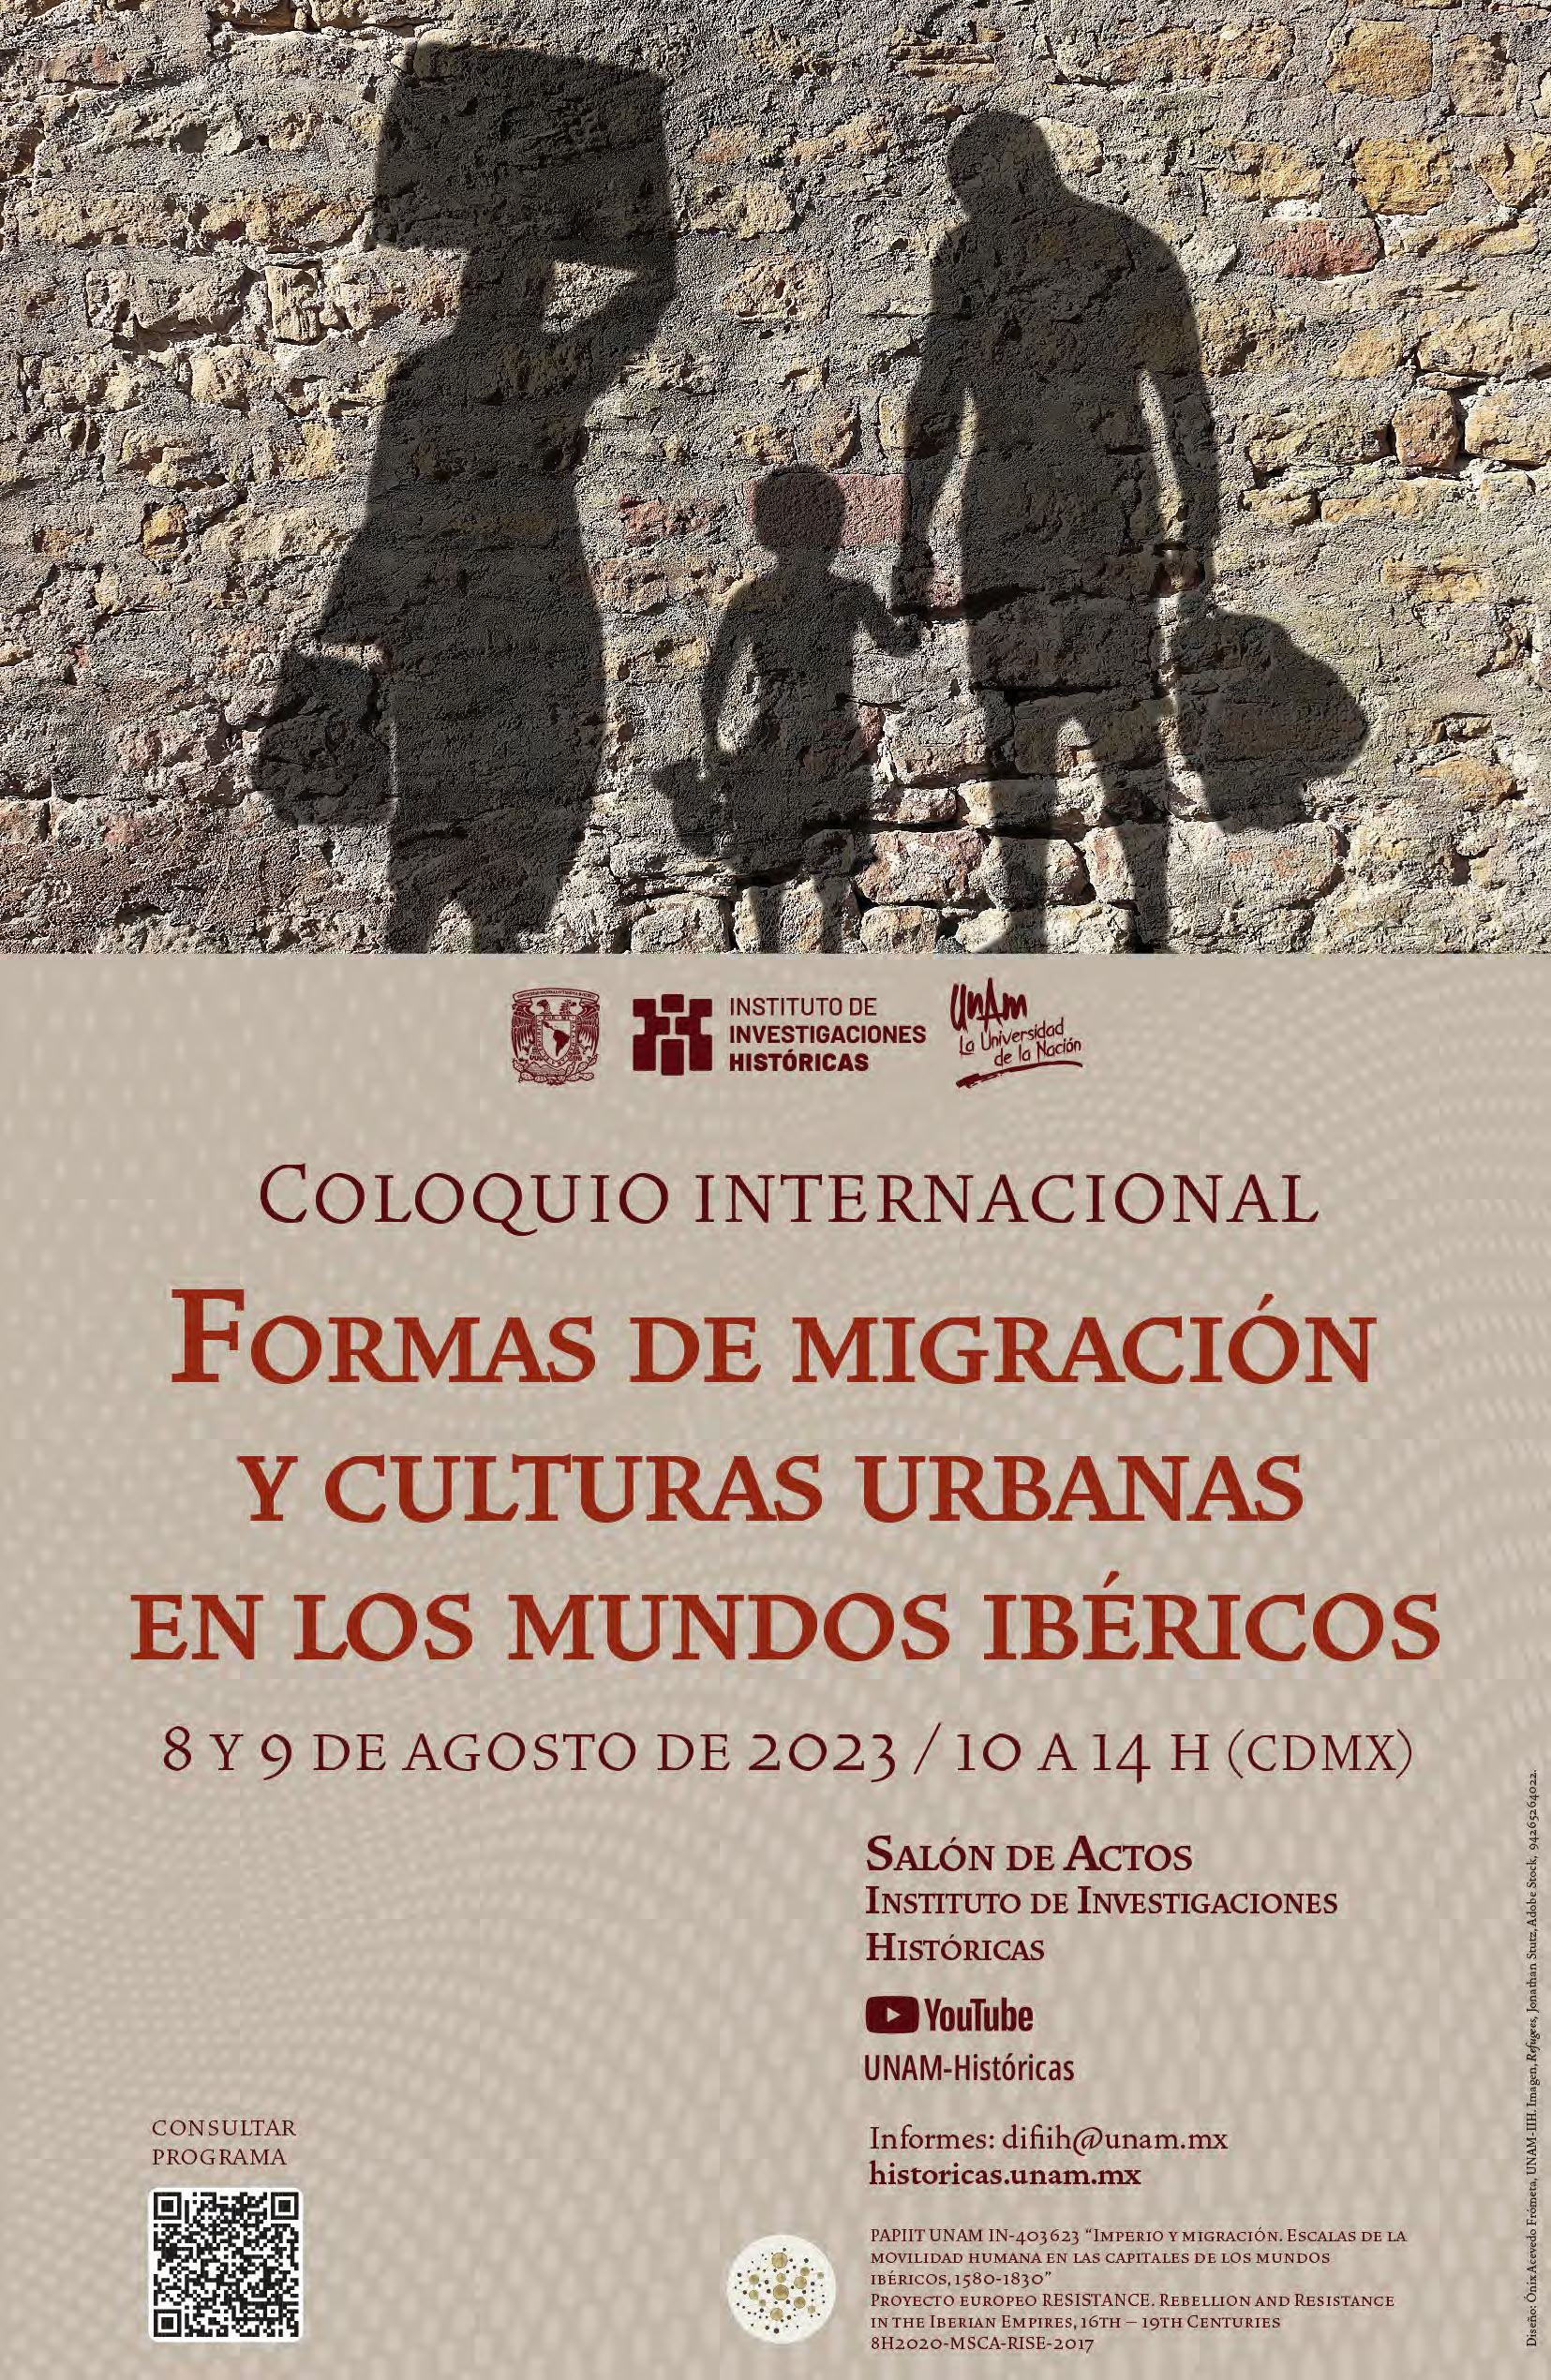 Cartel del Coloquio Internacional "Formas de migración y culturas urbanas en los mundos ibéricos"